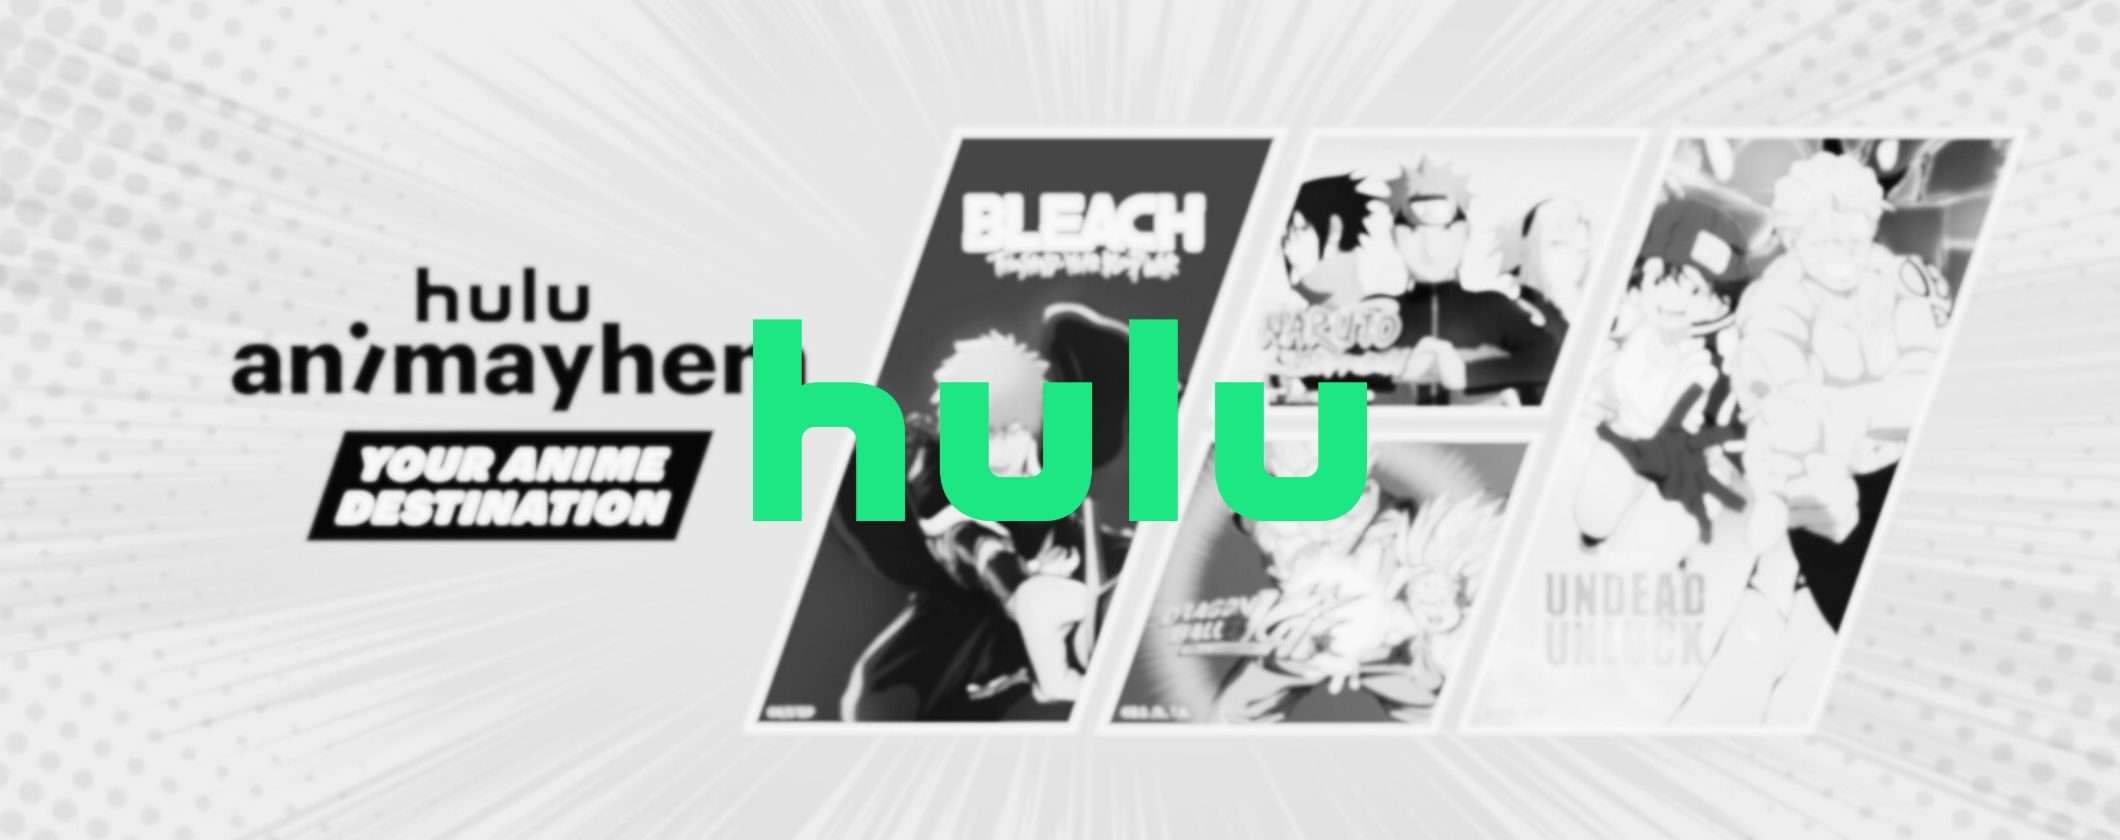 Come vedere Hulu in streaming dall'Italia